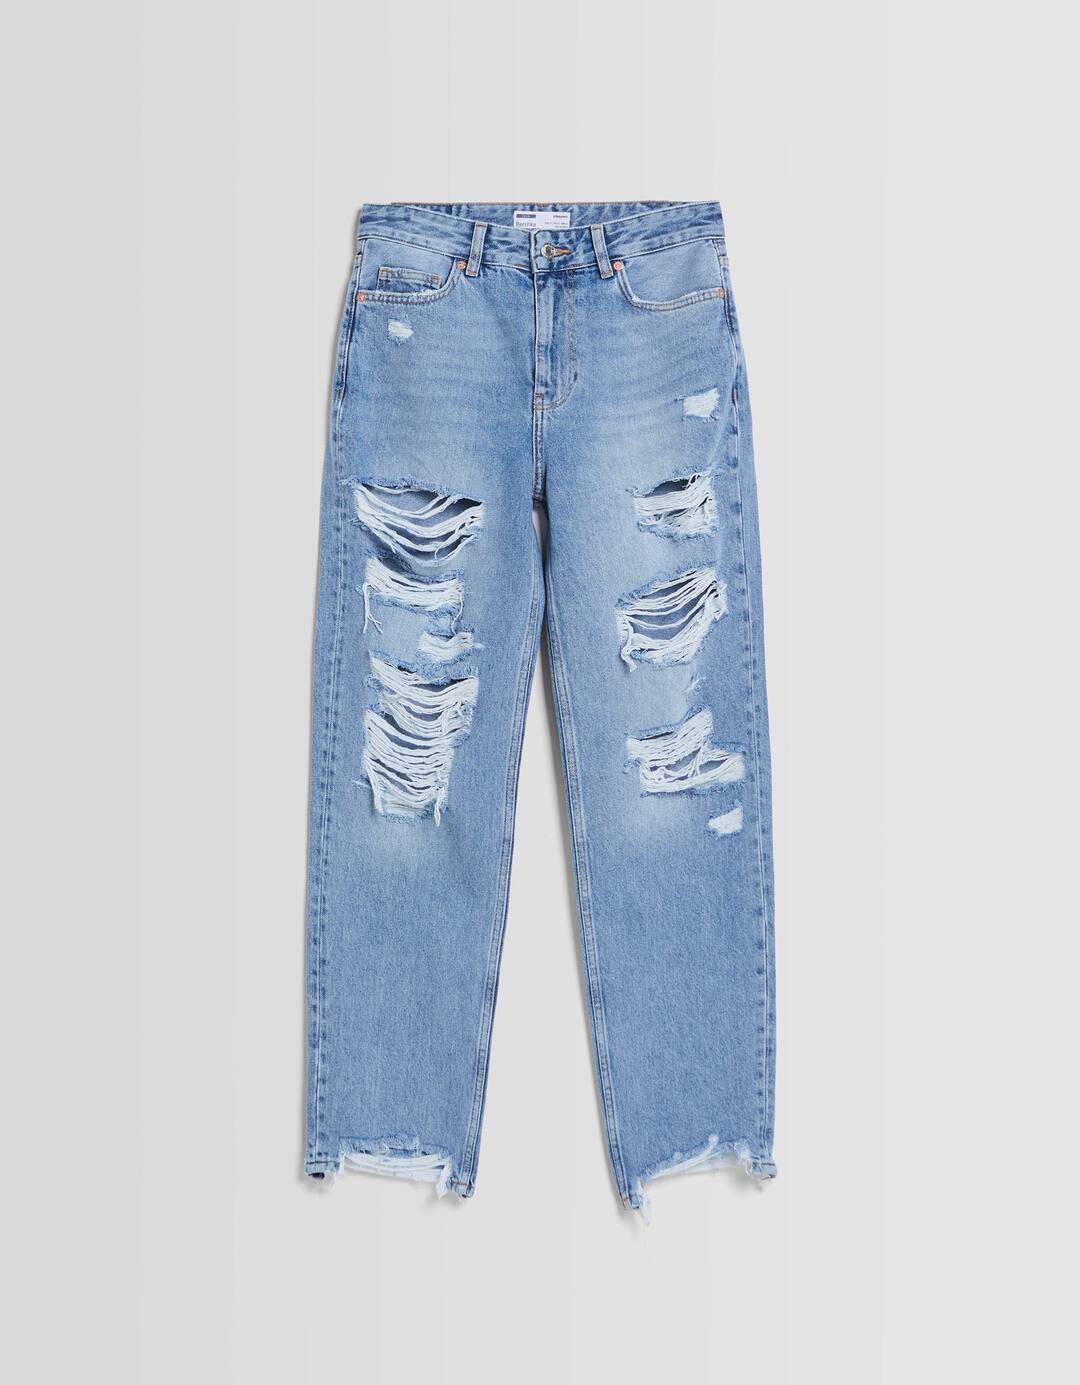 Jeans direitas cropped com rasgões